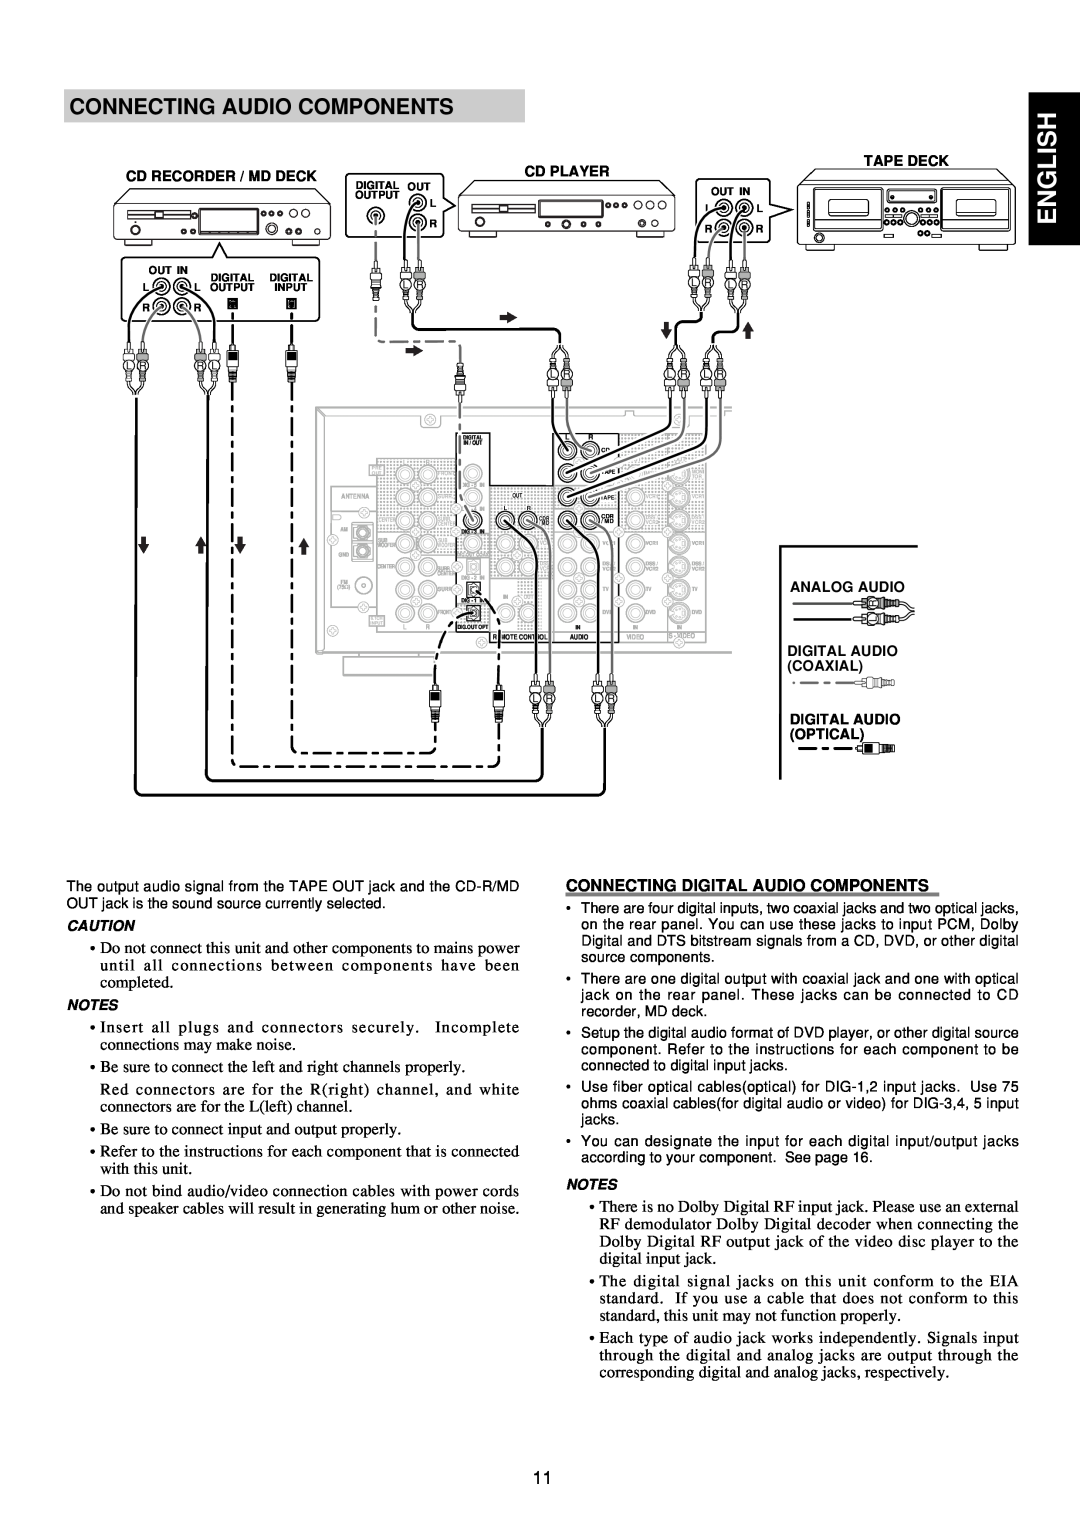 Marantz SR6300 manual English, Connecting Audio Components, Connecting Digital Audio Components 